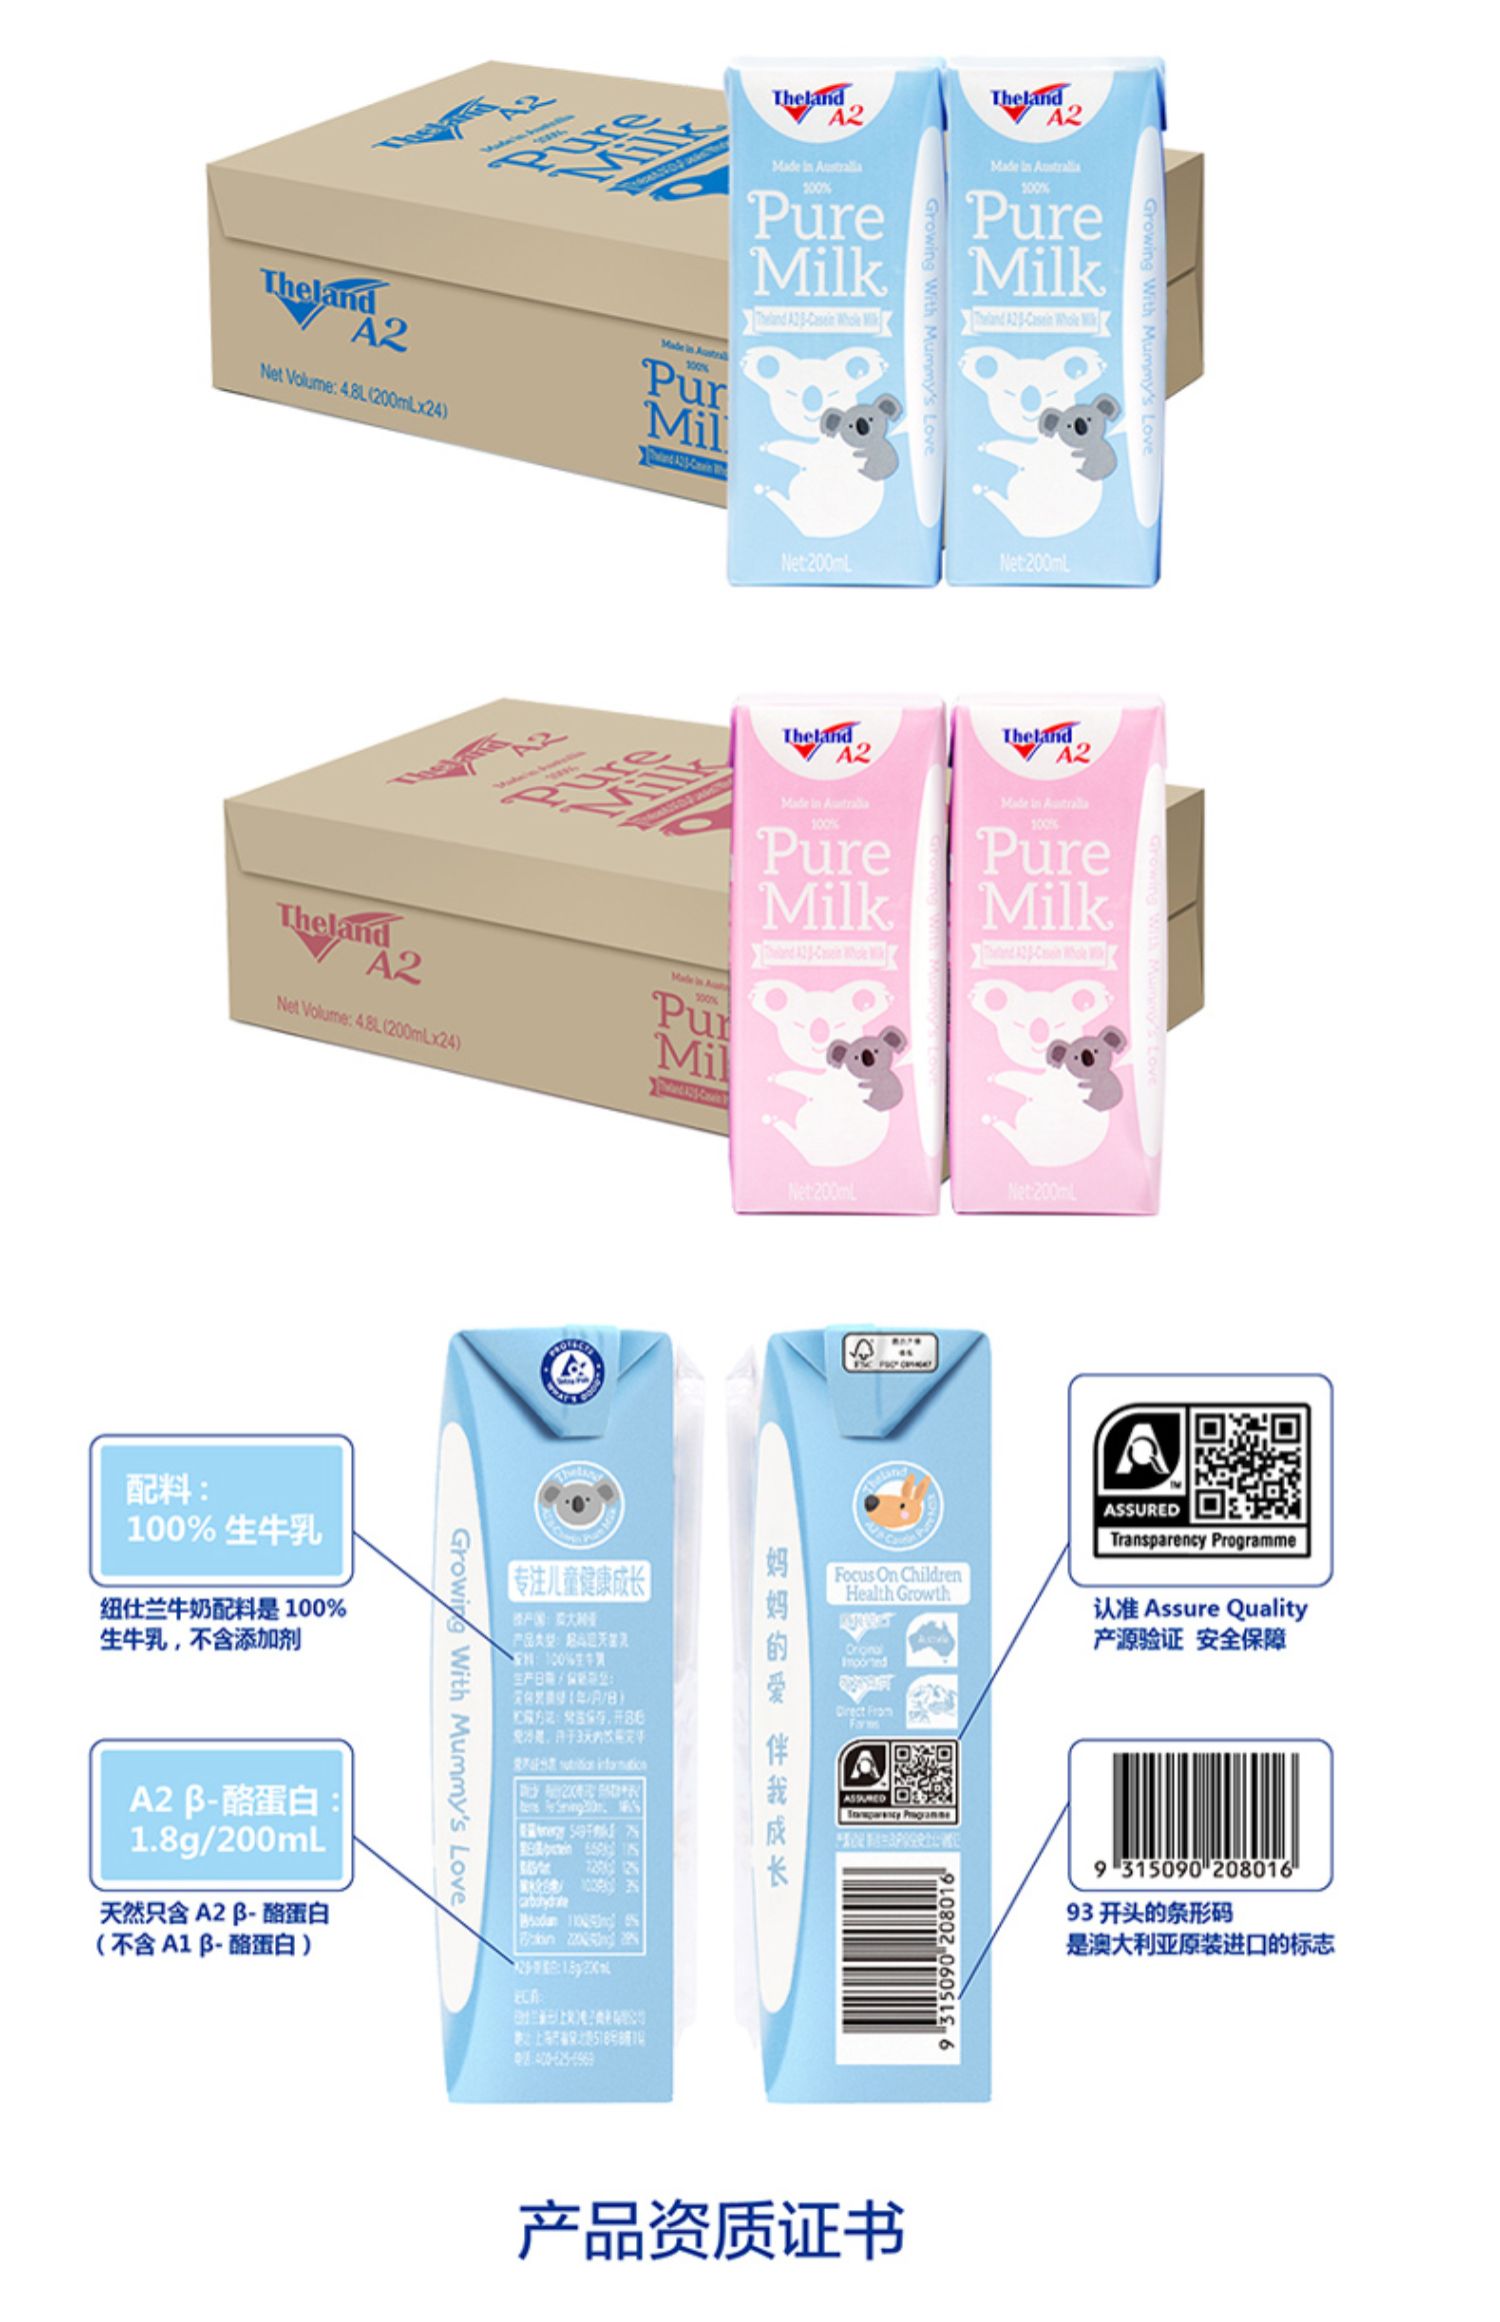 纽仕兰进口A2儿童高钙纯牛奶24盒